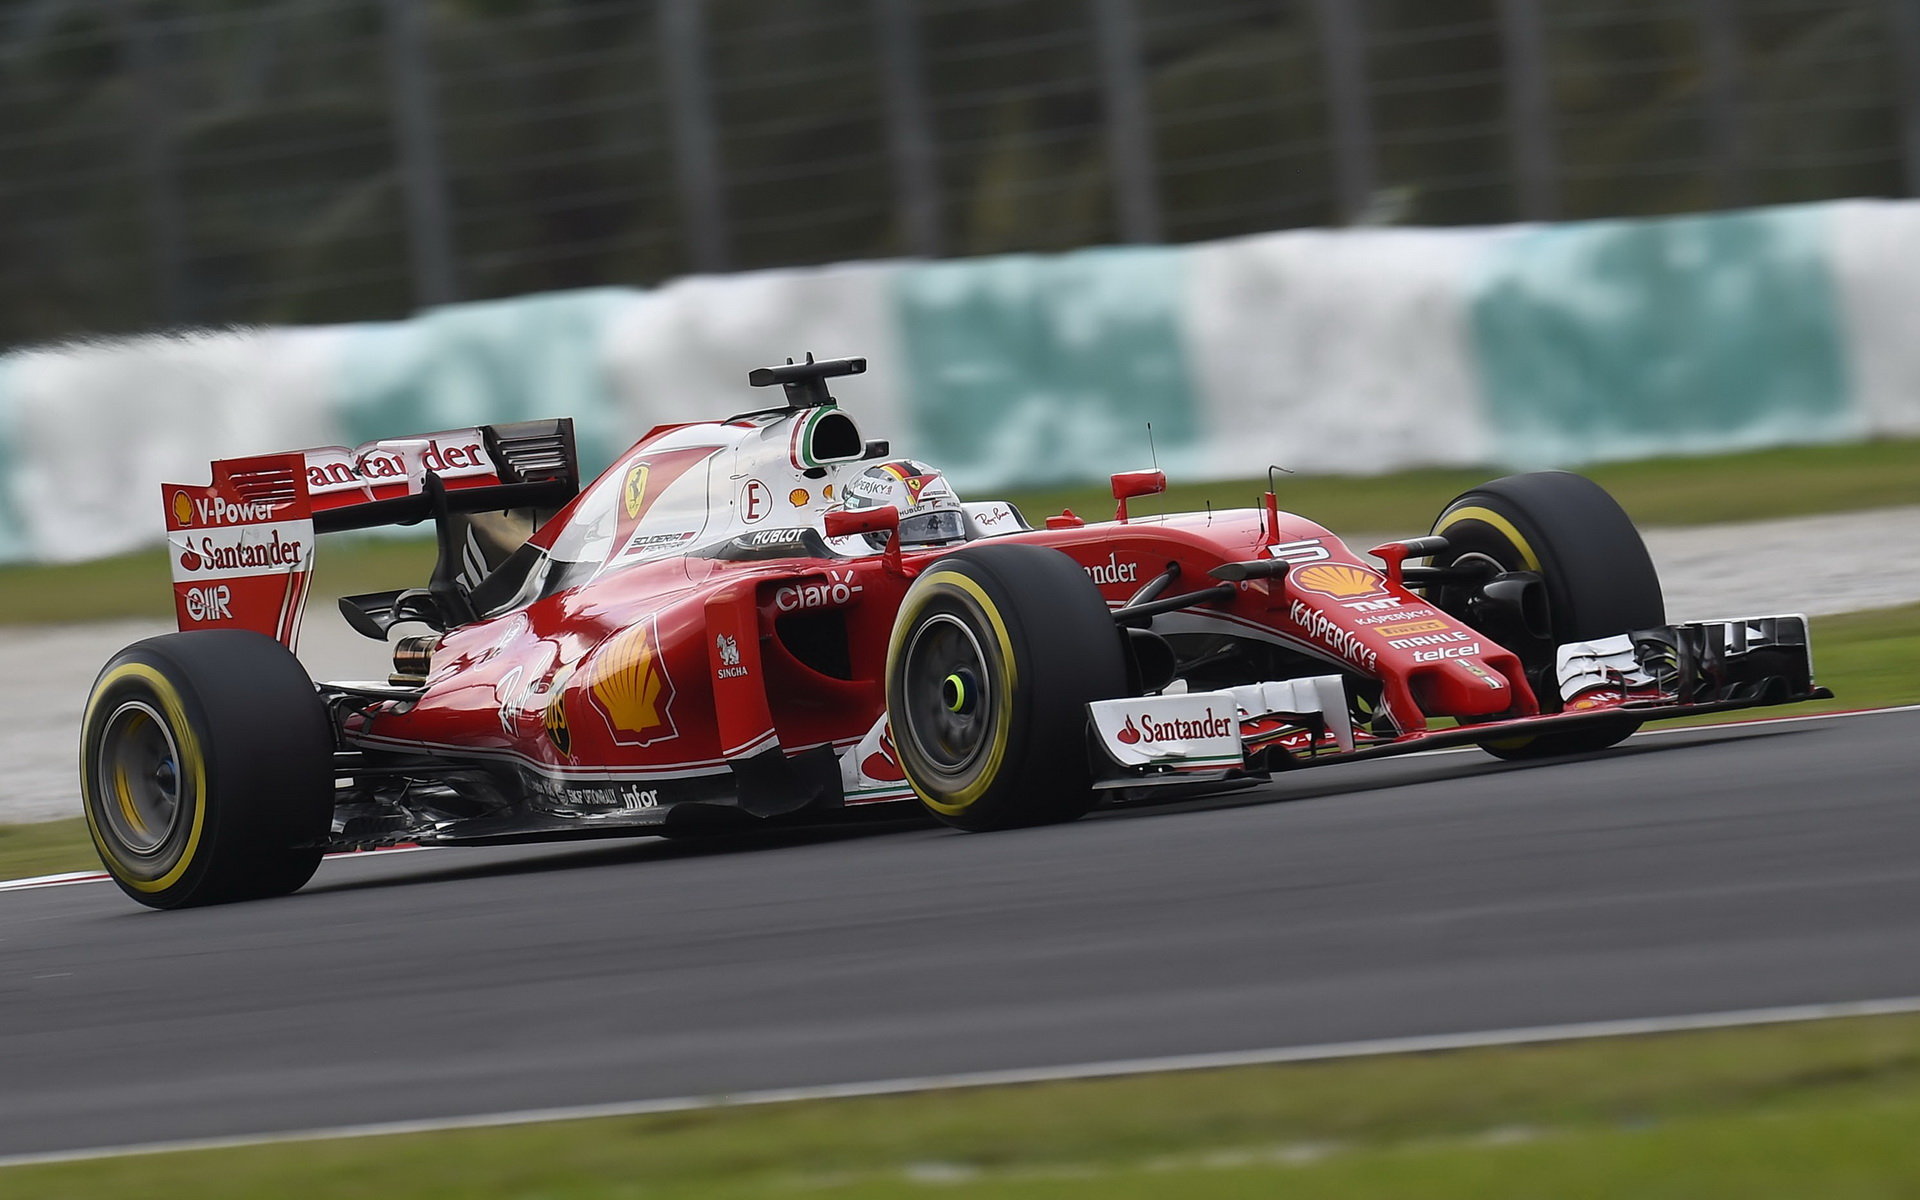 Sebastian Vettel v kvalifikaci v Malajsii